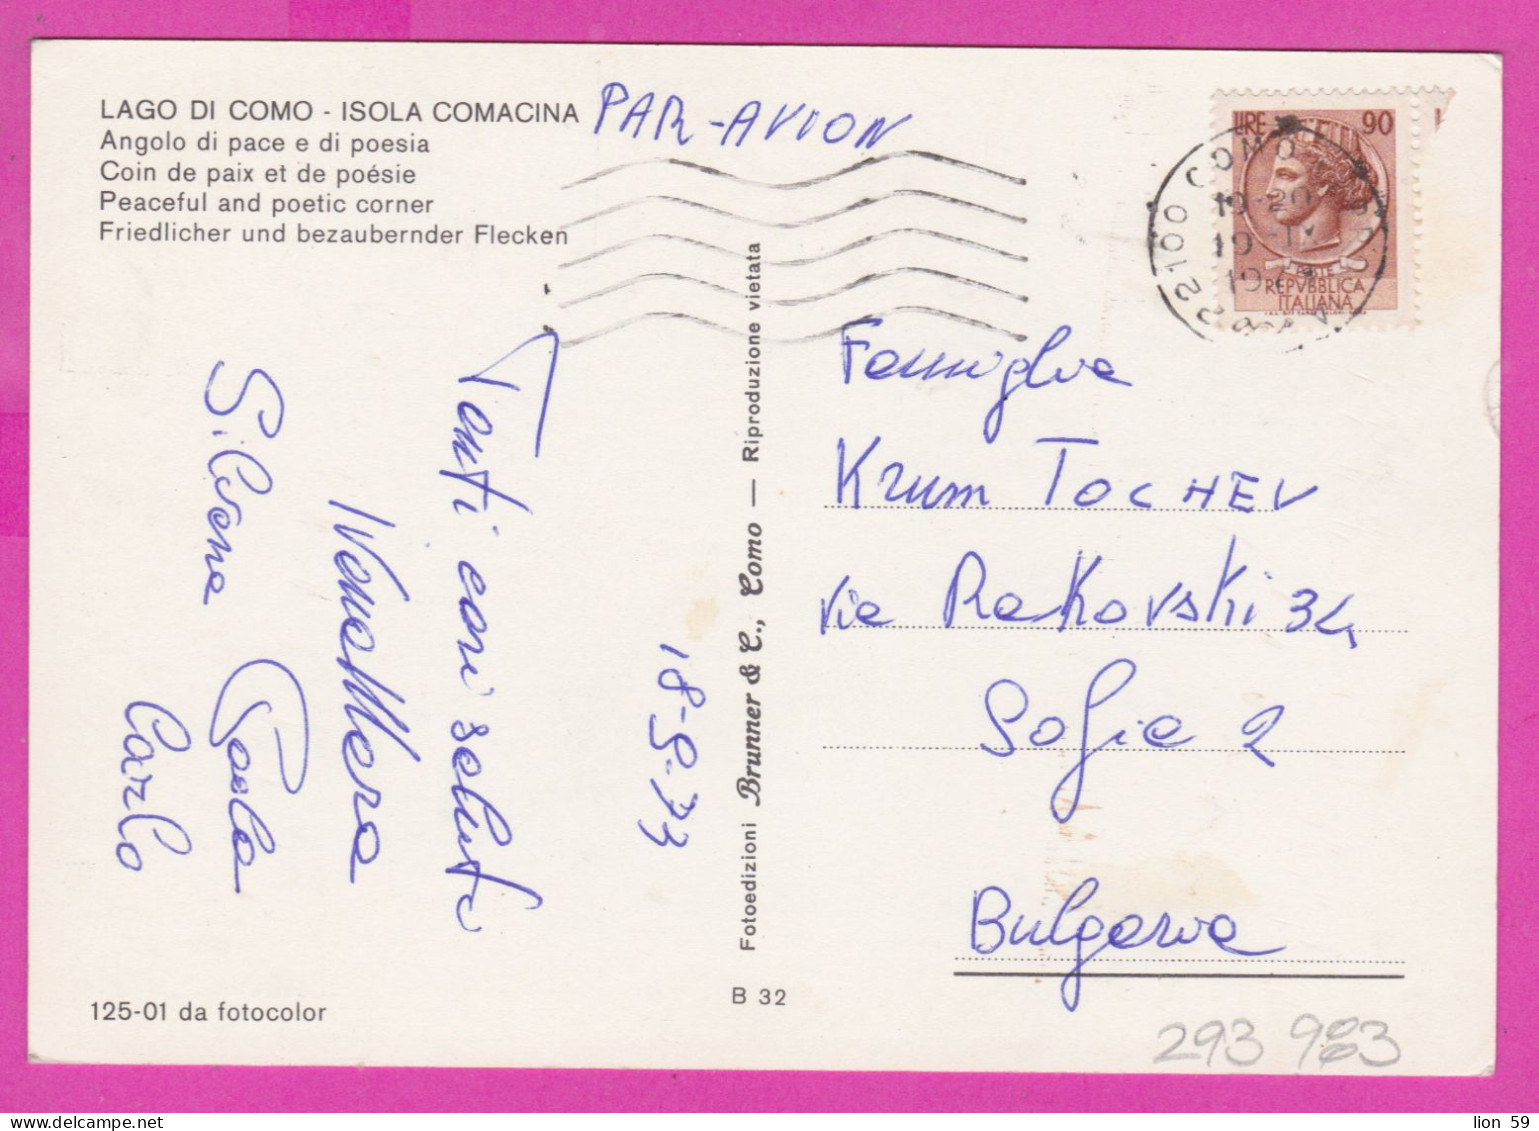 293983 / Italy - LAGO DI COMO - Isola Comacina , Angolo Di Pace E Di Poesia PC 1973 USED 90 L Coin Of Syracuse - 1971-80: Marcophilie